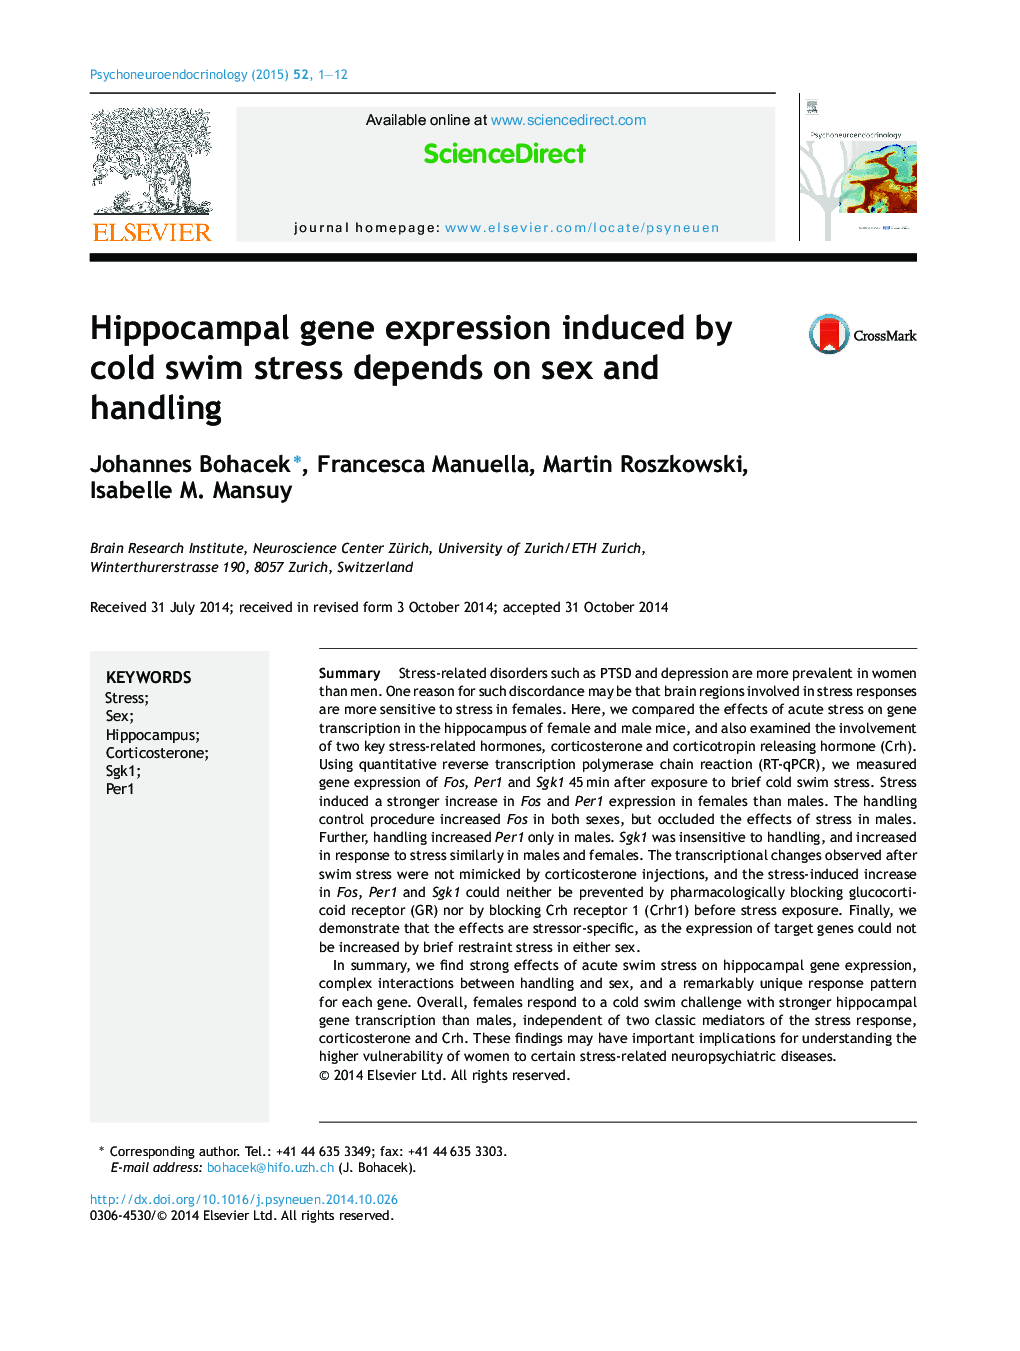 بیان ژن هیپوکامپ ناشی از استرس شنا در سرد بستگی به جنس و دست زدن دارد 